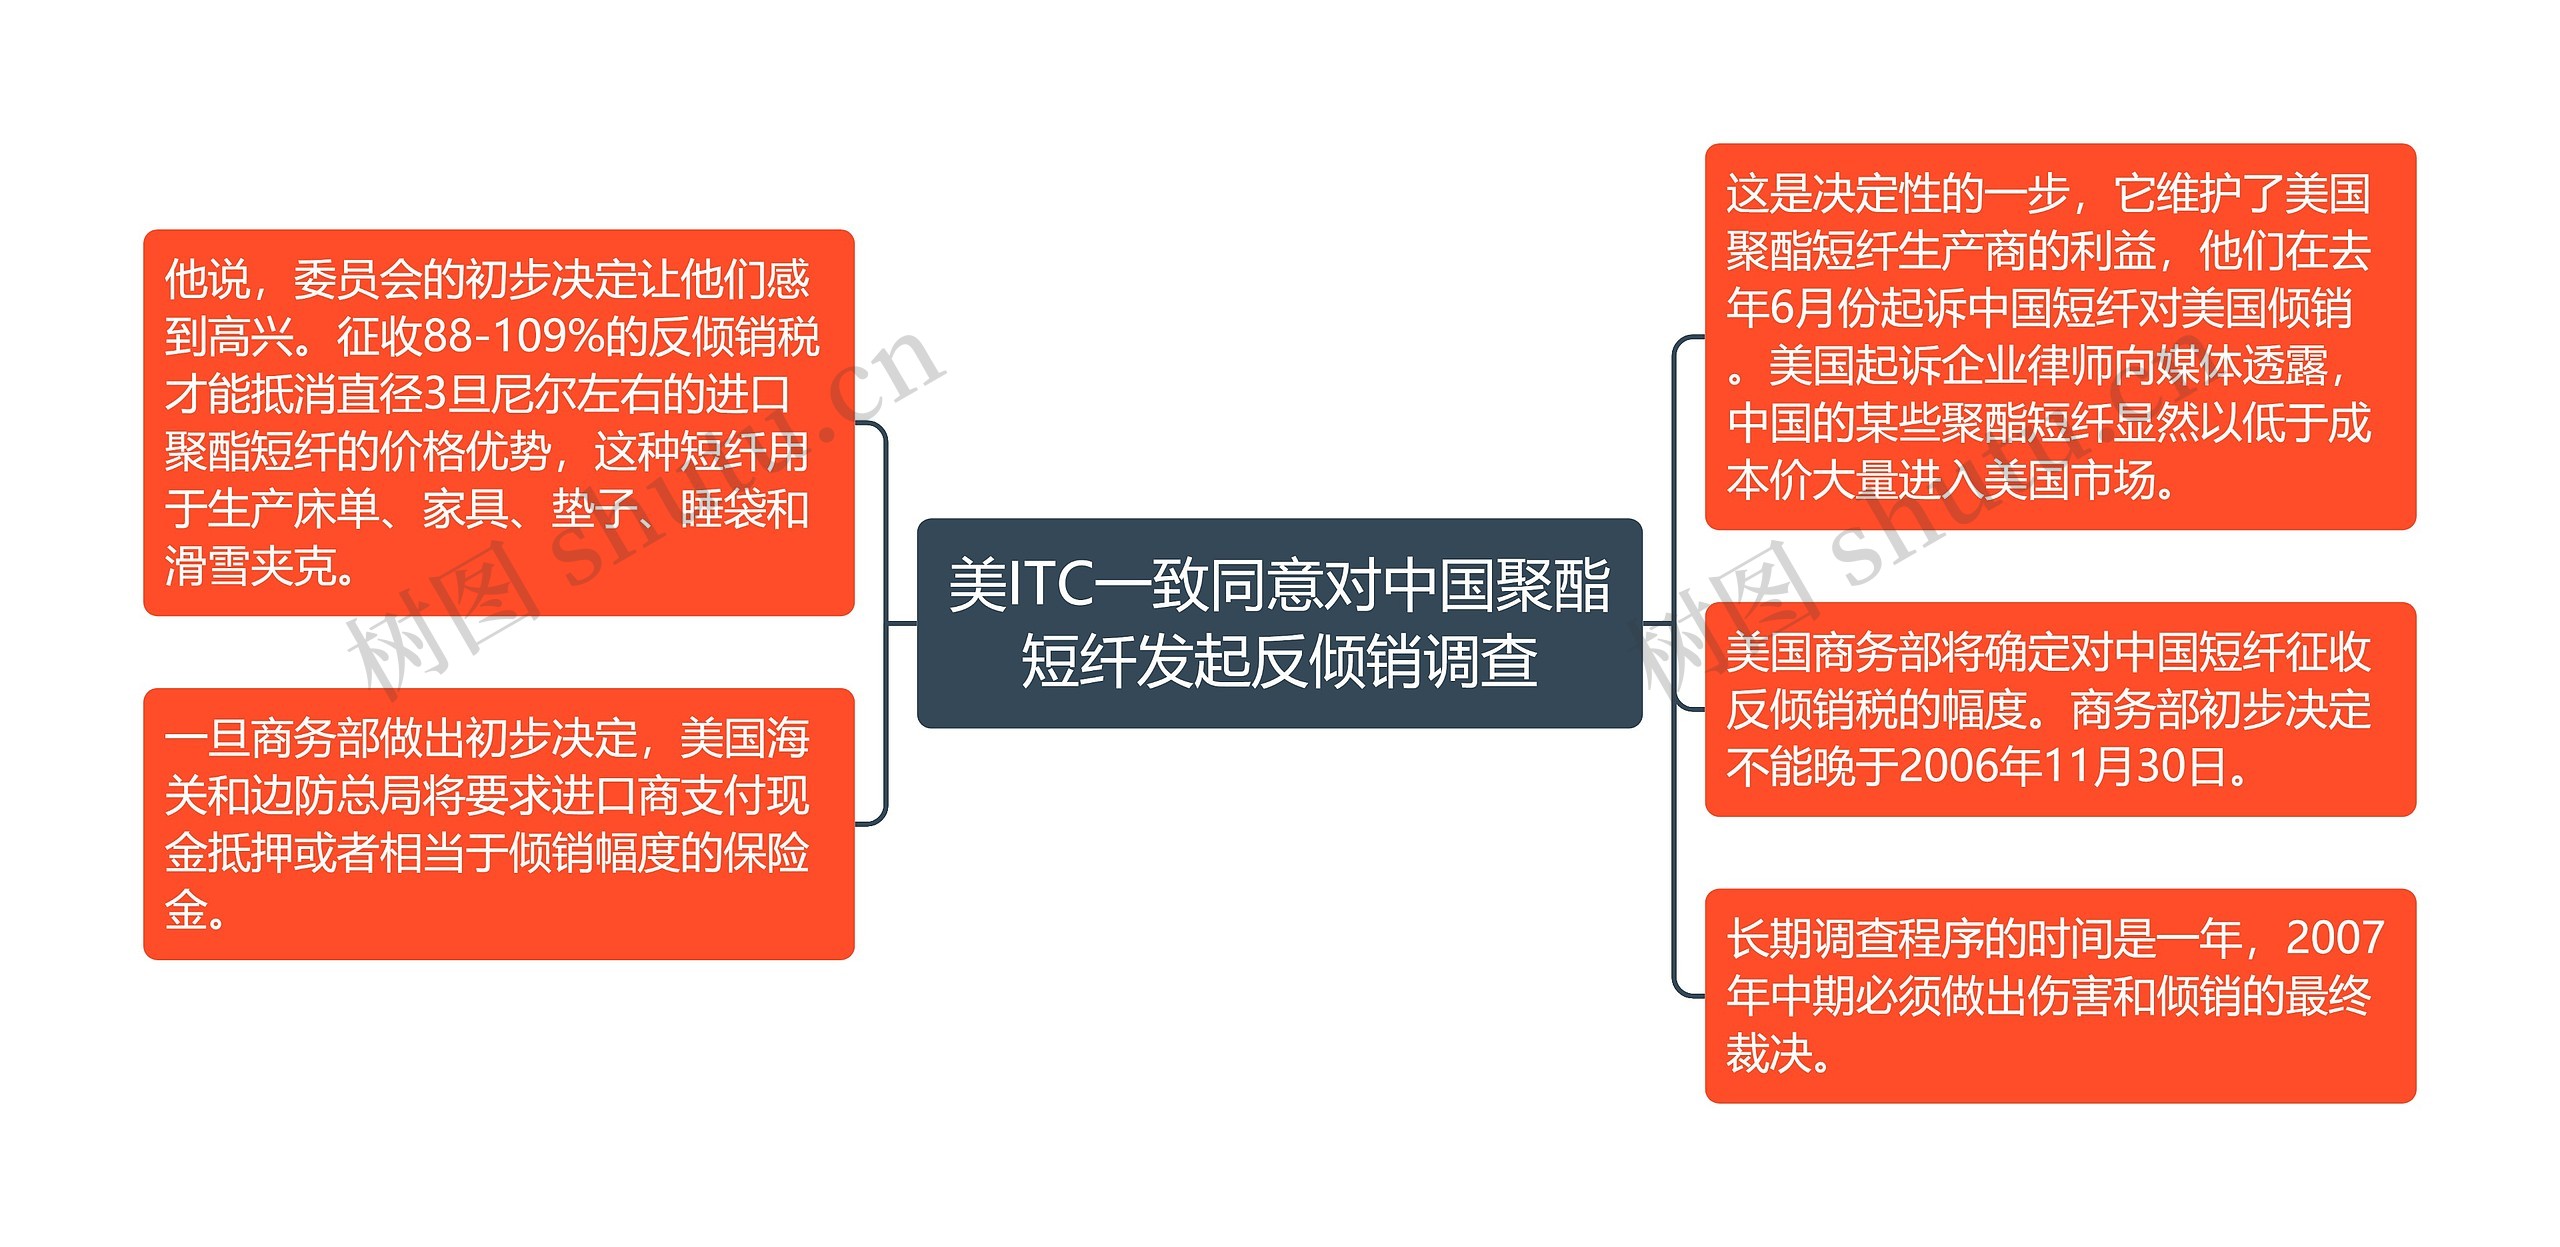 美ITC一致同意对中国聚酯短纤发起反倾销调查